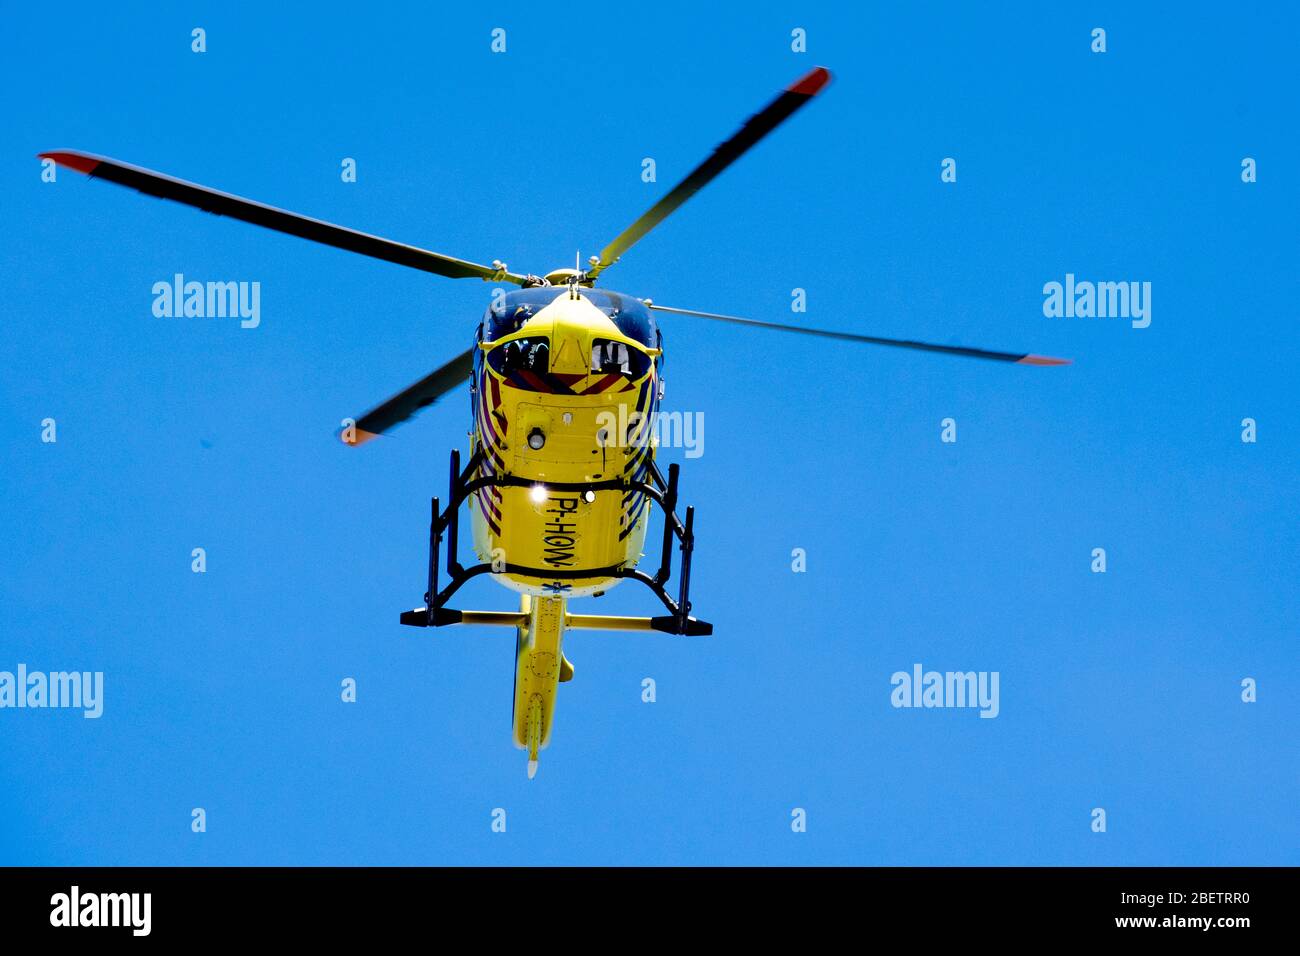 Der Trauma-Hubschrauber, der Lifeliner 5, transportiert einen IC Covid-19-Patienten vom Bernhoven-Krankenhaus in die umc Groningen. Corona-Patienten sind in den Niederlanden verbreitet und der Trauma-Hubschrauber dient speziell den Opfern des Corona-Virus. Stockfoto